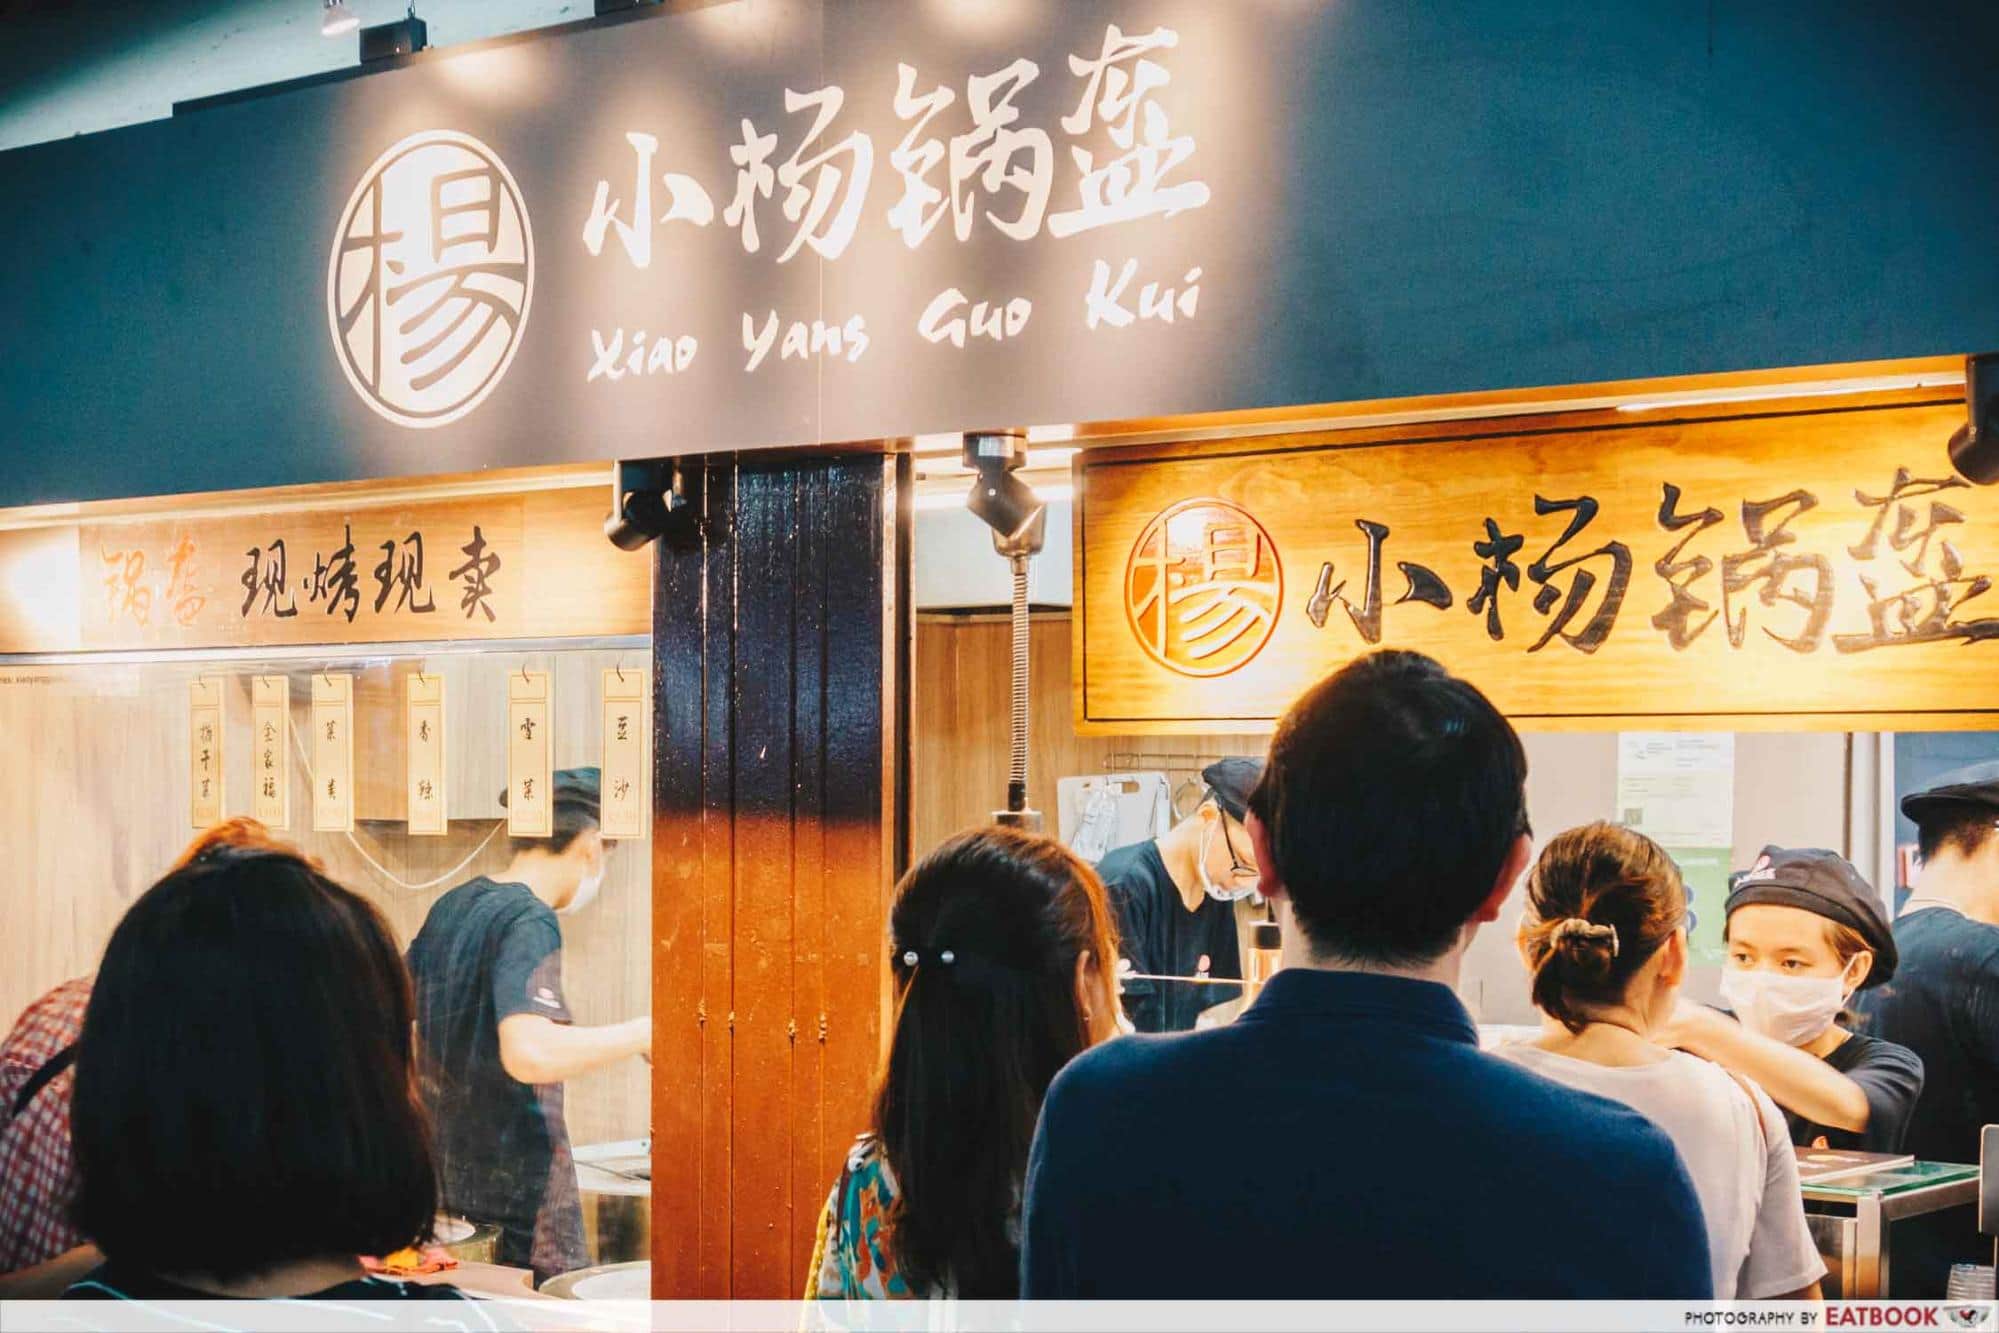 May Restaurants 2019 - Xiao Yang Guo Kui